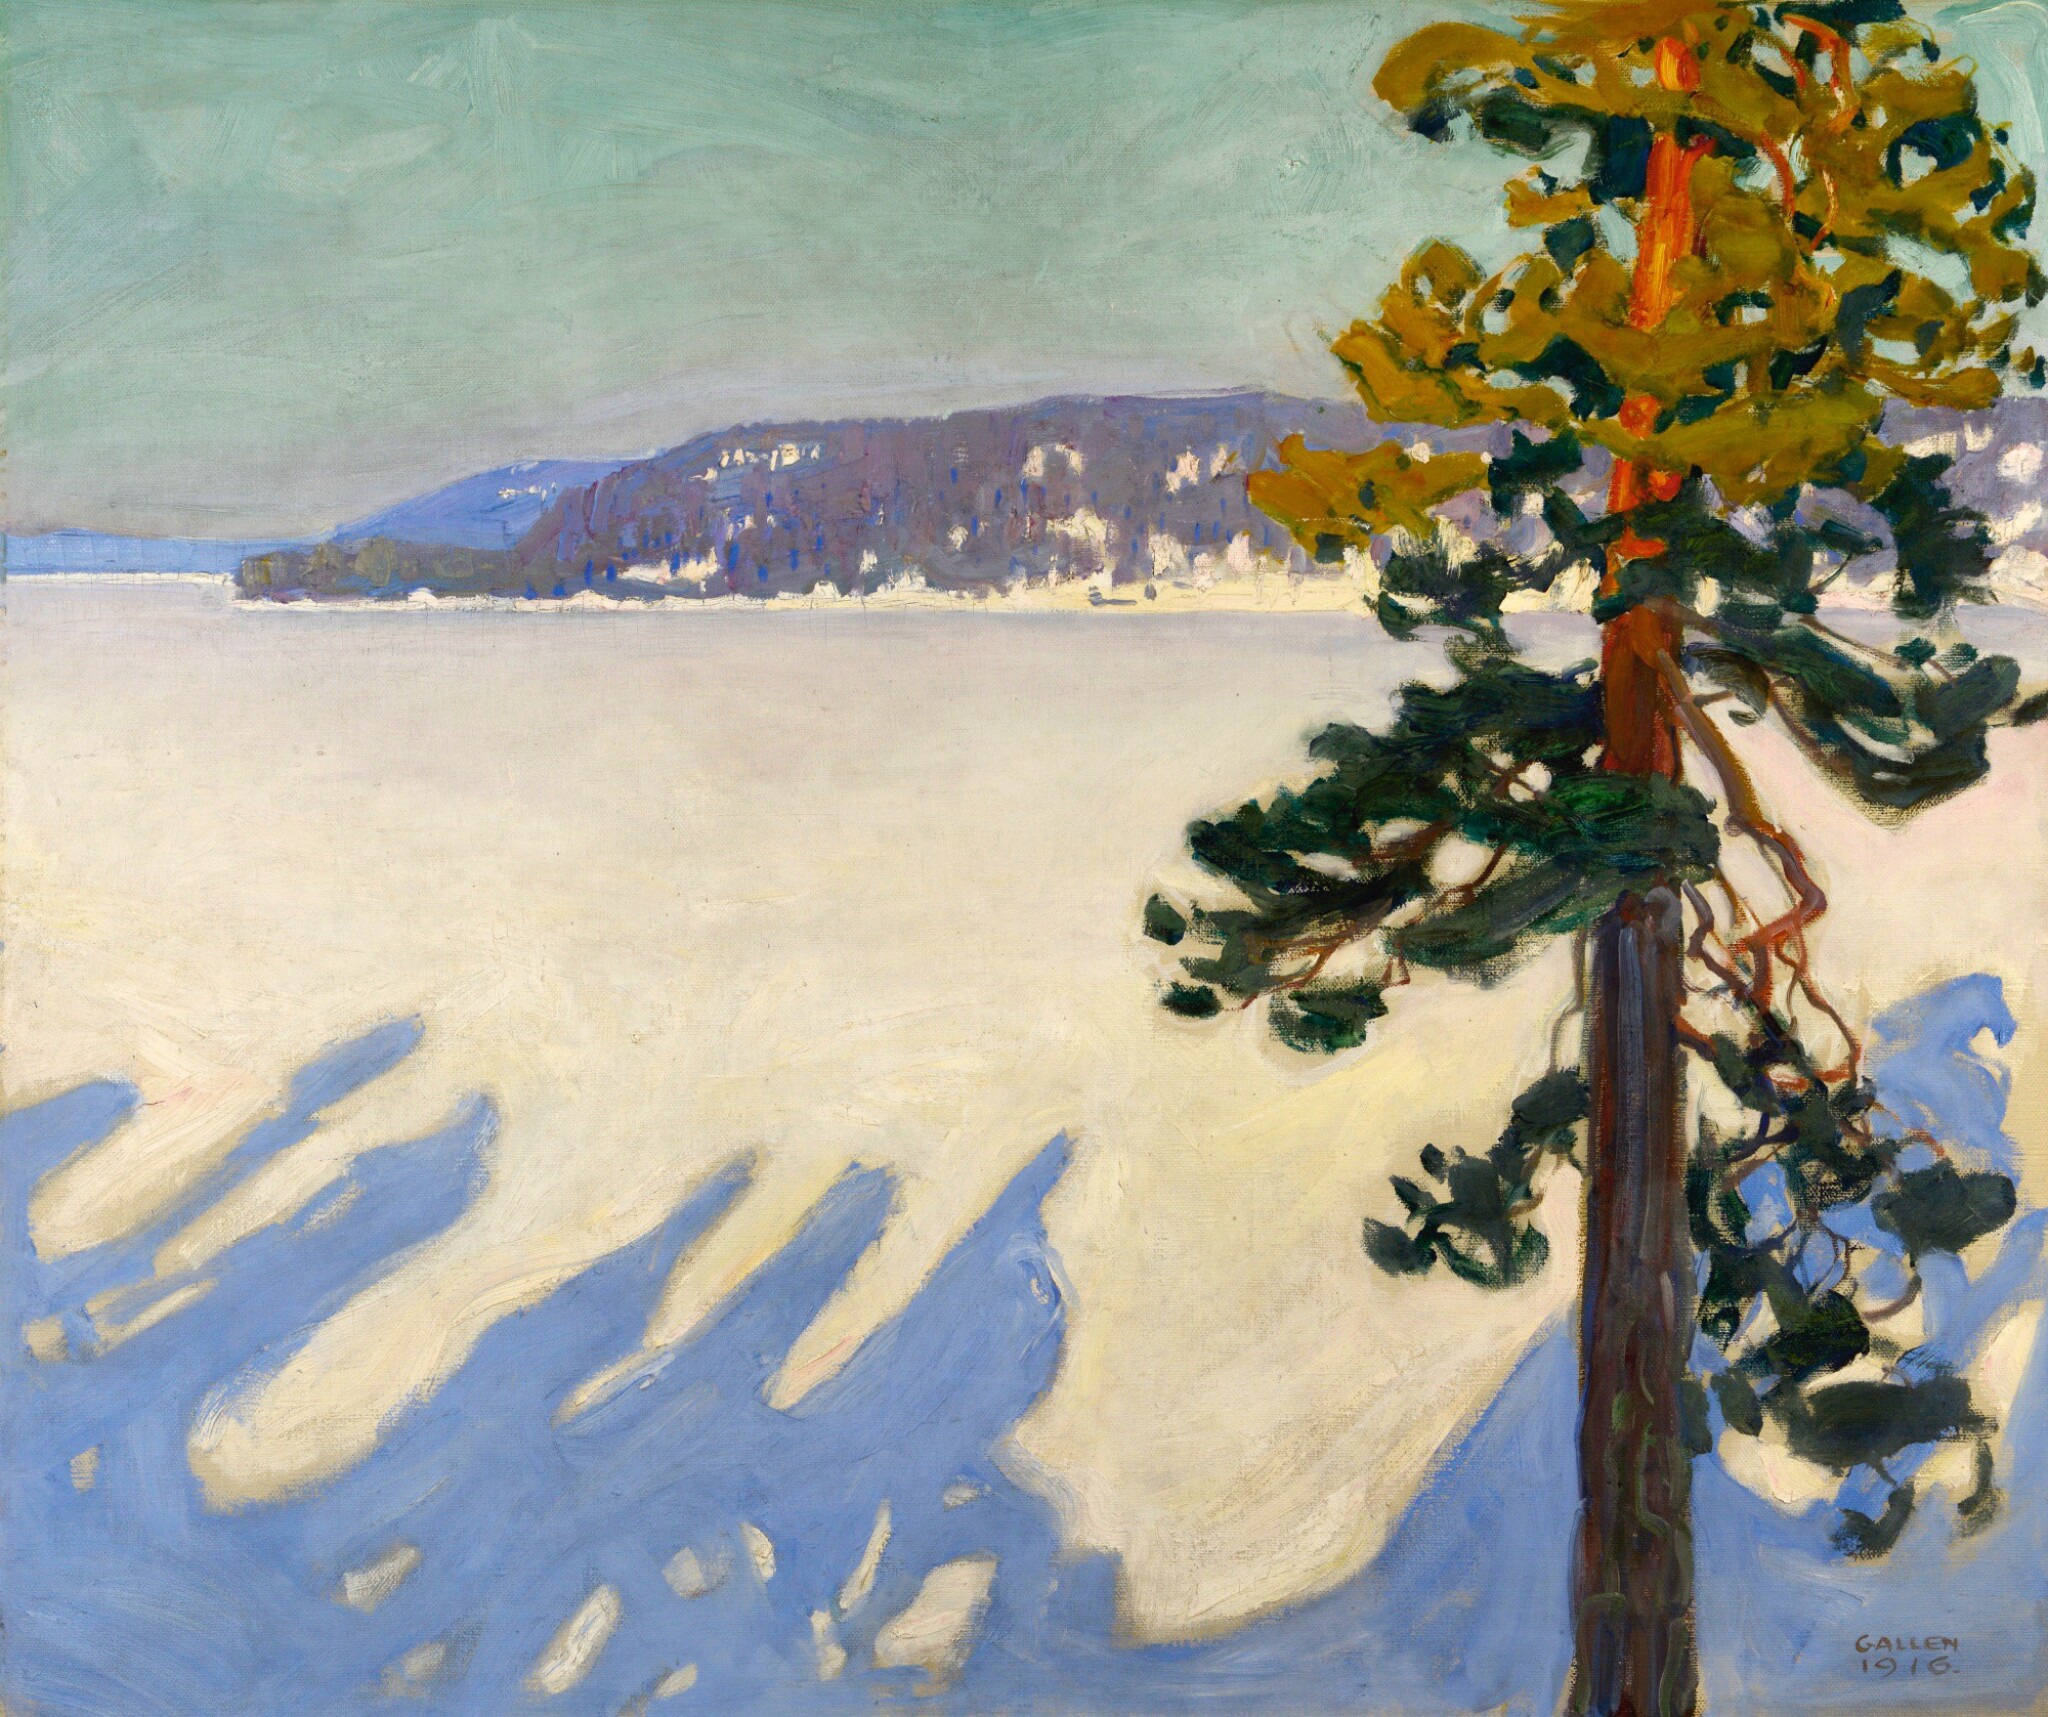 冬天的鲁奥韦西湖 by 阿克塞利 加伦-卡勒拉 - 1916 - 102 x 119.5 cm 